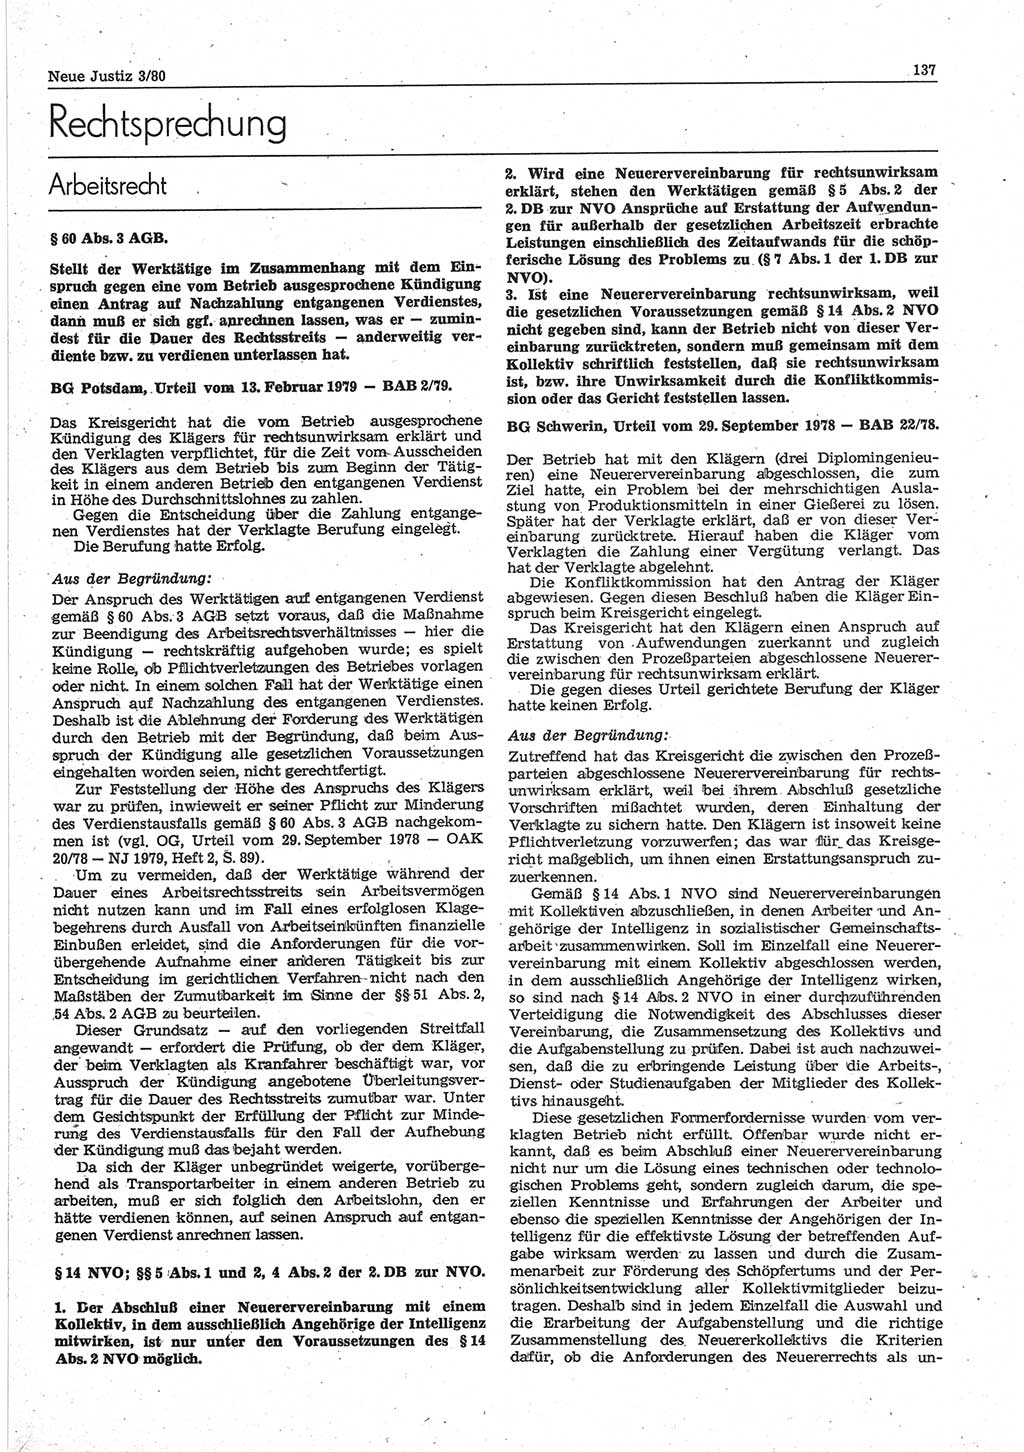 Neue Justiz (NJ), Zeitschrift für sozialistisches Recht und Gesetzlichkeit [Deutsche Demokratische Republik (DDR)], 34. Jahrgang 1980, Seite 137 (NJ DDR 1980, S. 137)